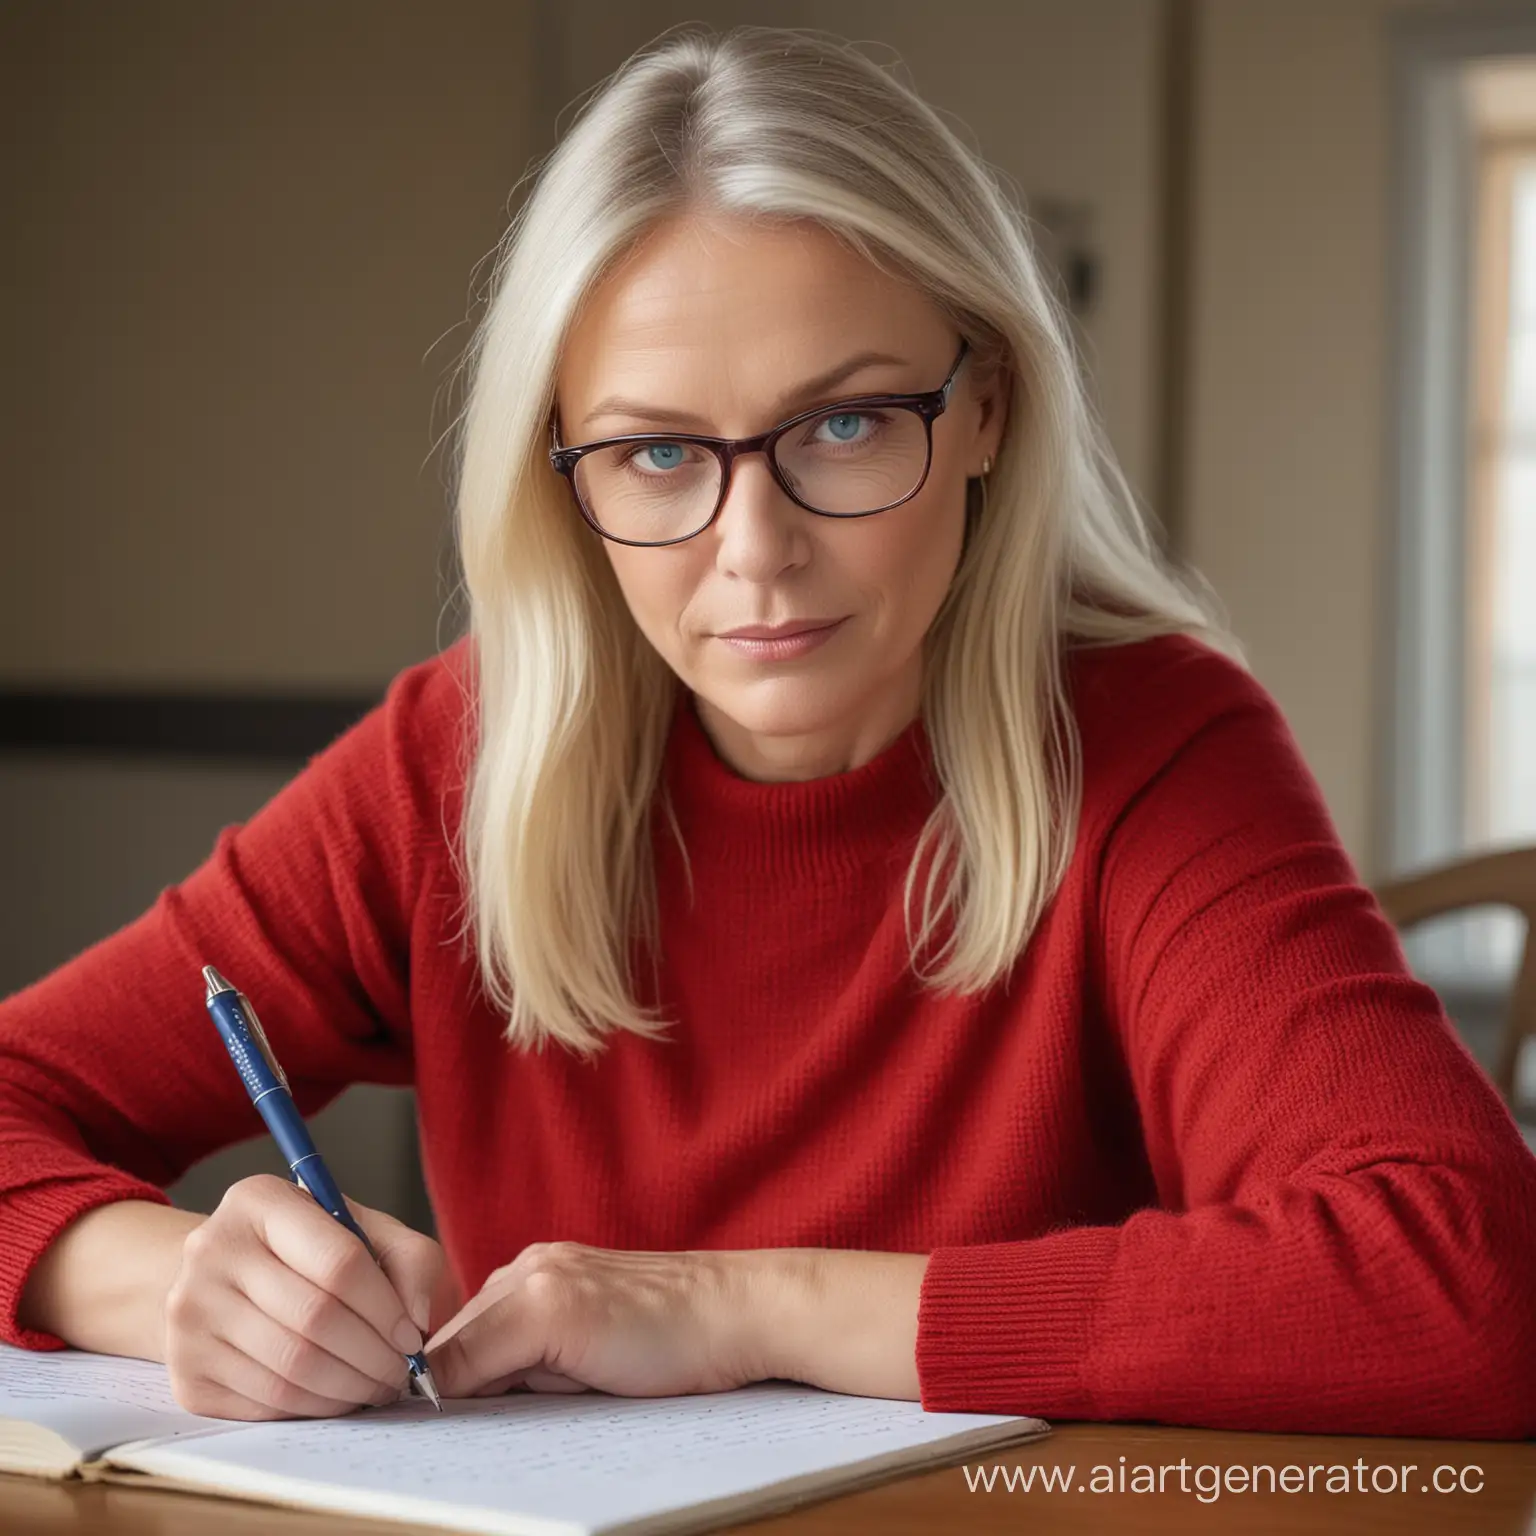 блондинка с голубыми глазами, 60 лет, в очках, в красном пуловере,  с ручкой в руке, сидит за столом, пишет 